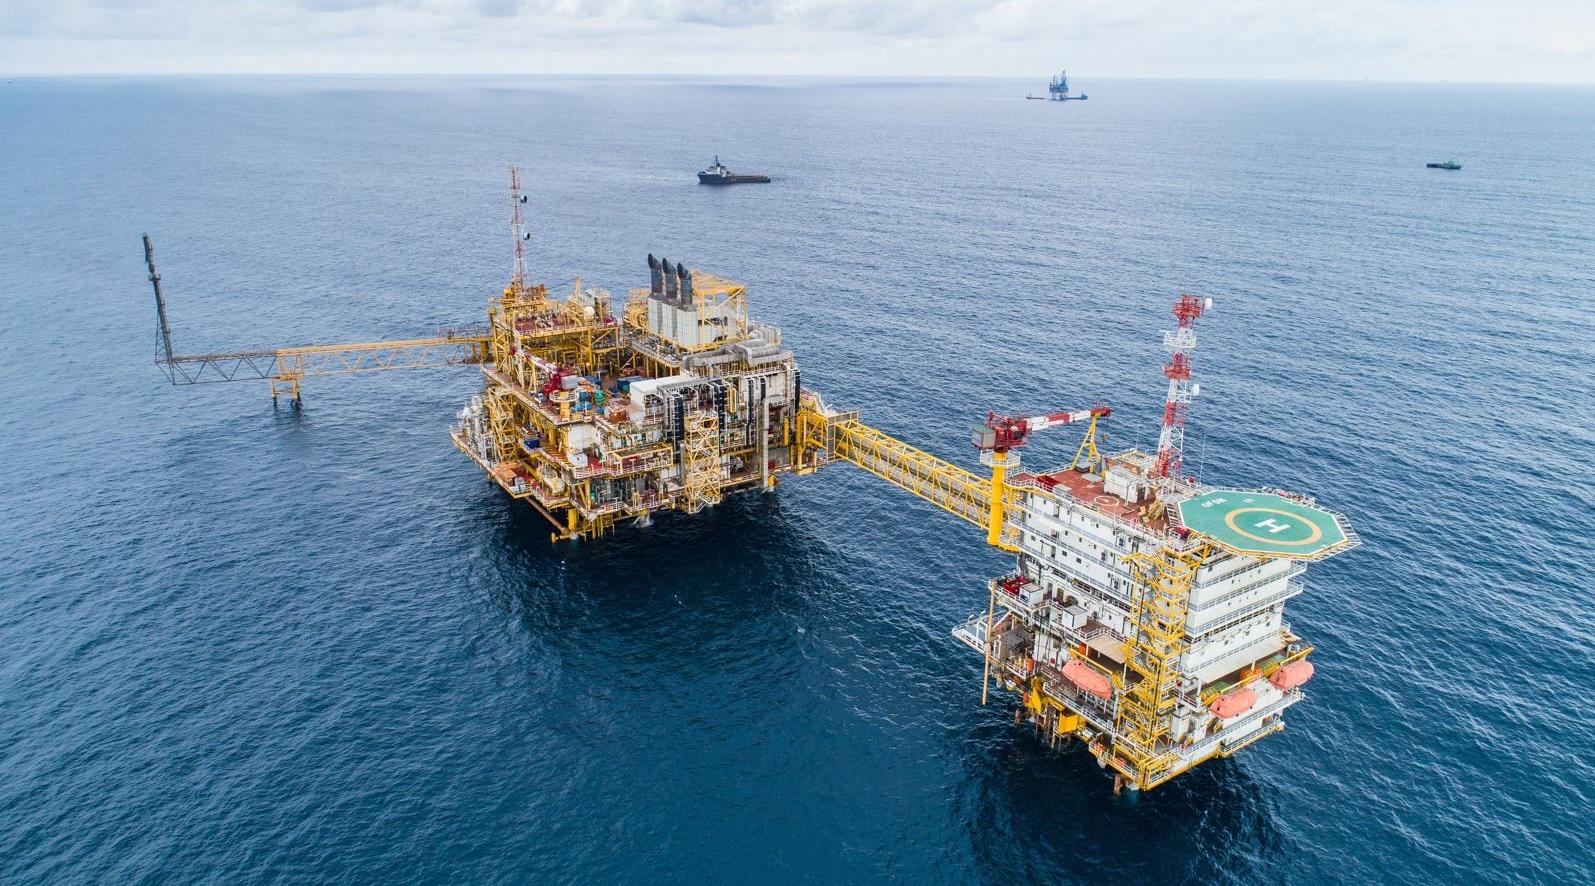 أحد حقول النفط البحرية التابعة لشركة توتال إنرجي مشغلة إنتكون